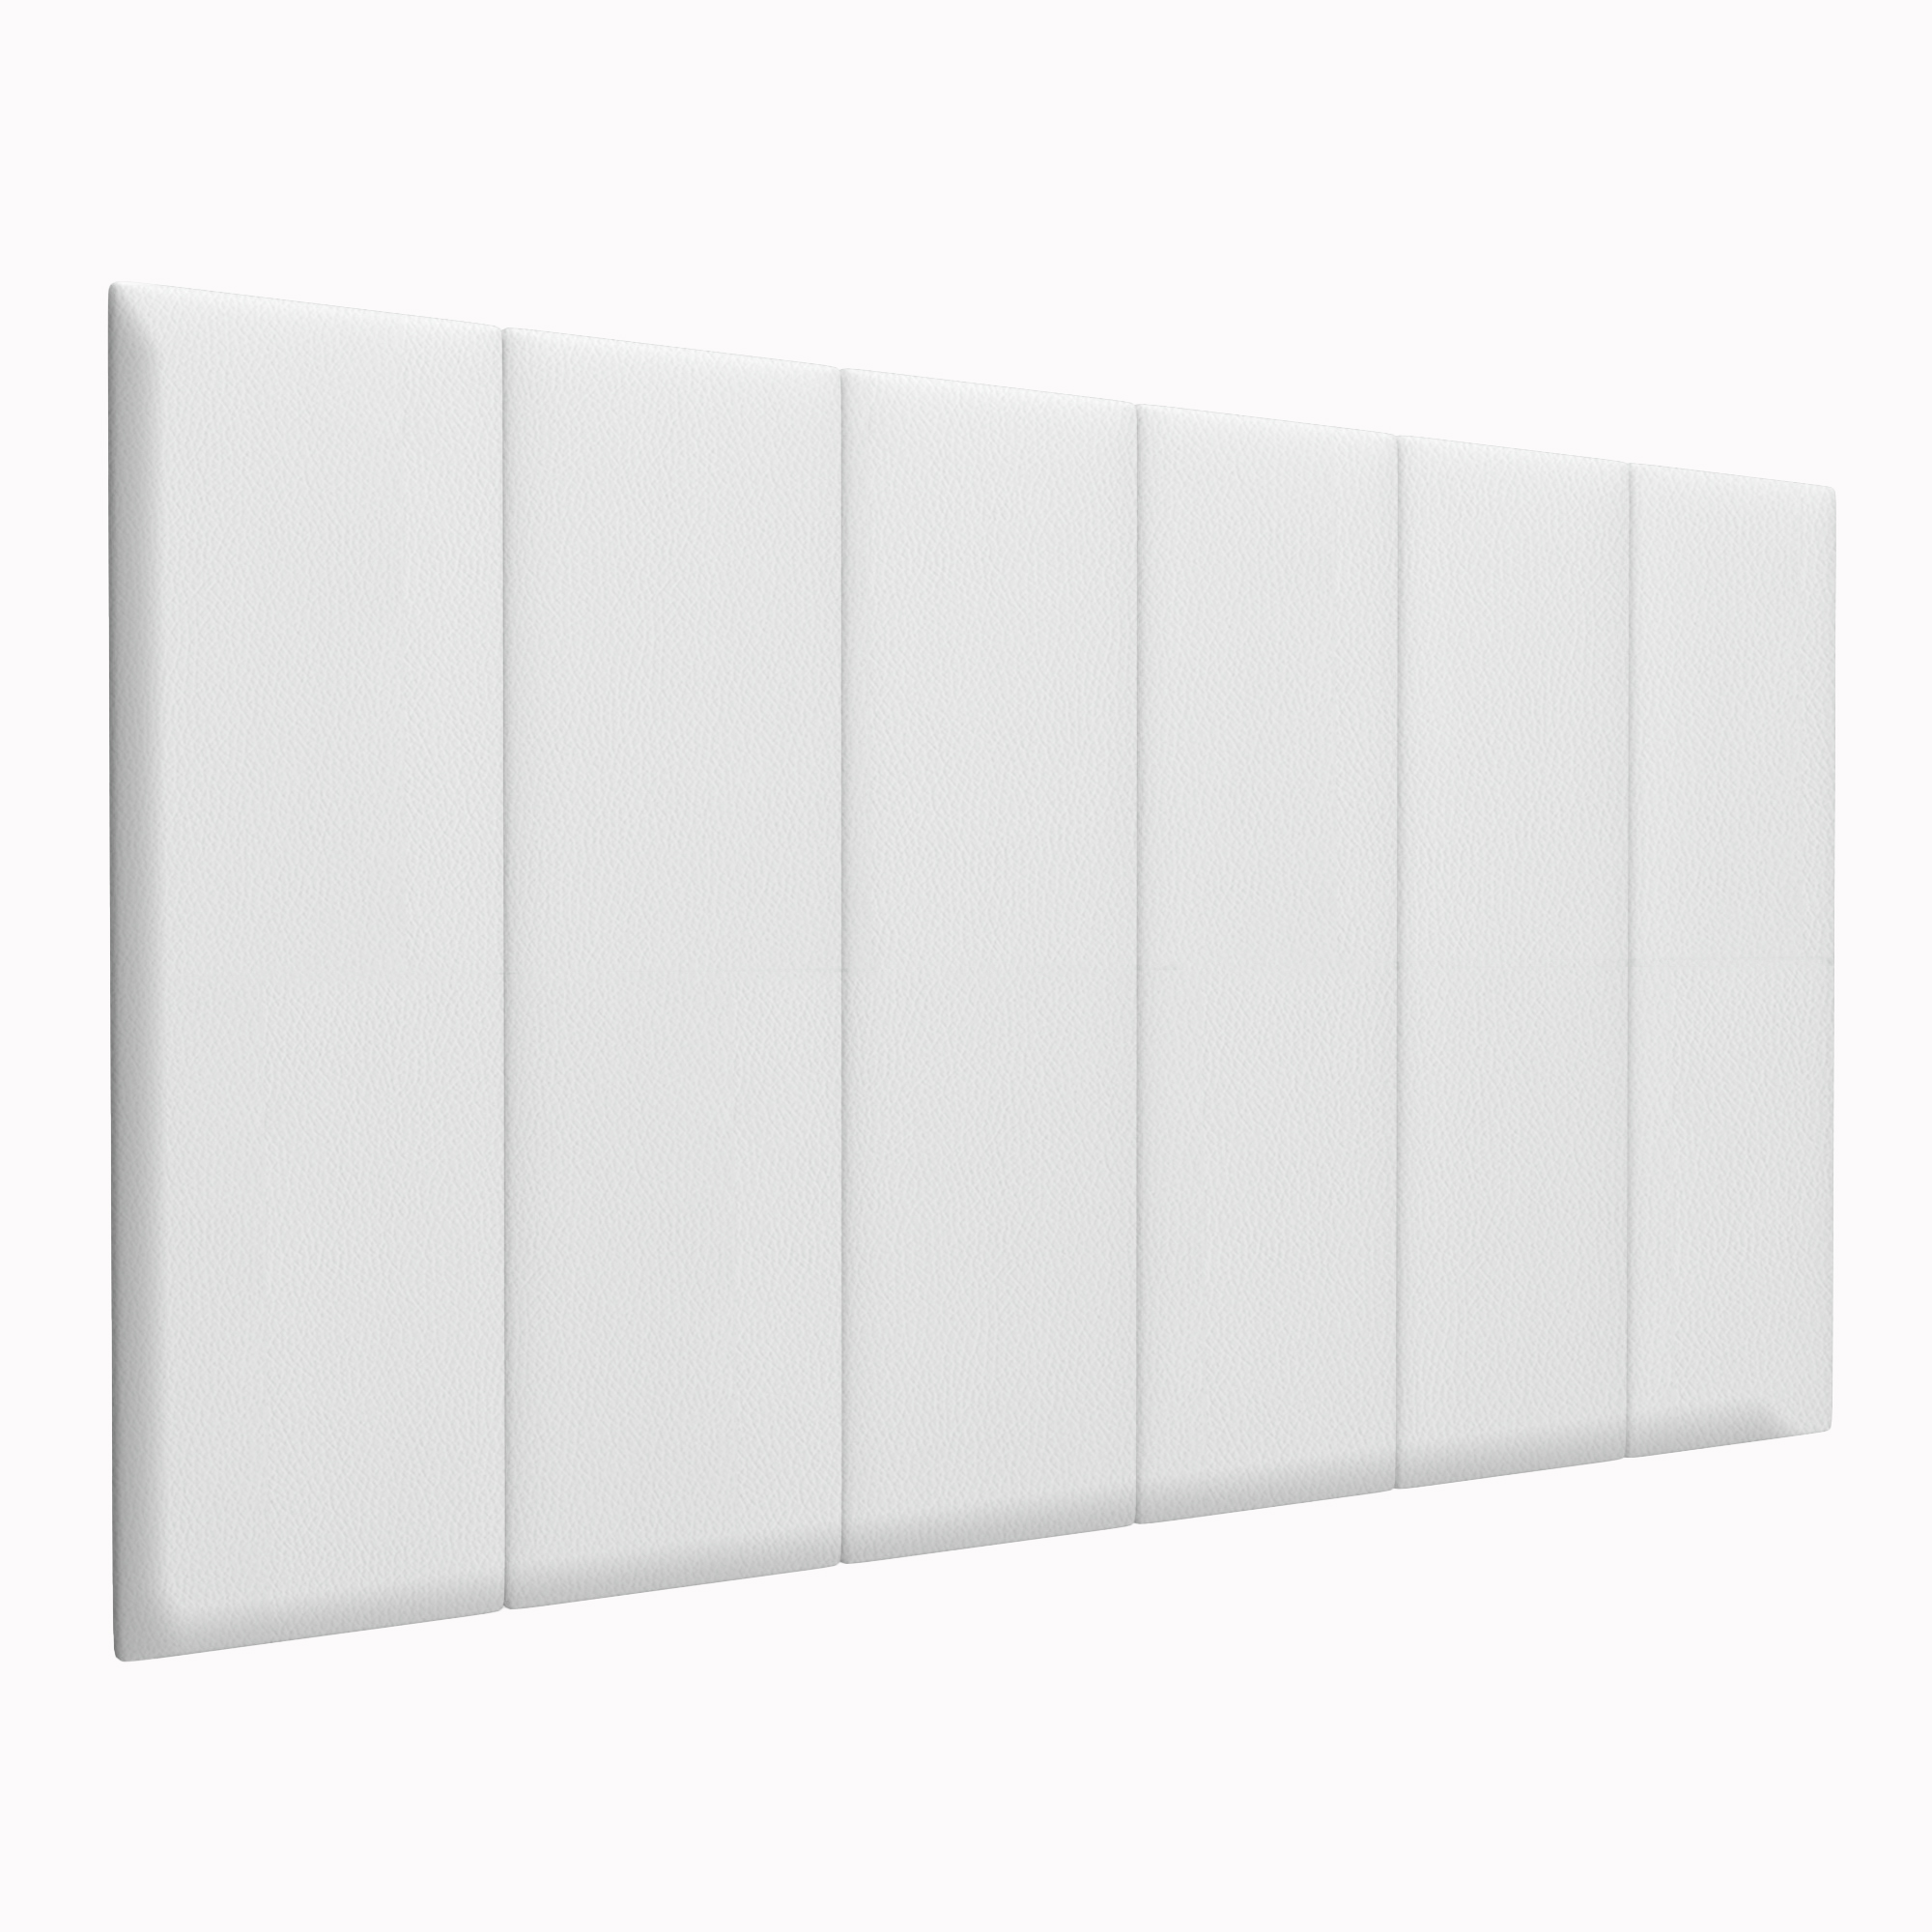 Шумо звукоизоляционные мягкие панели Eco Leather White 30х100 см 4 шт. салфетки для маникюра мягкие 560 шт 6 × 4 см